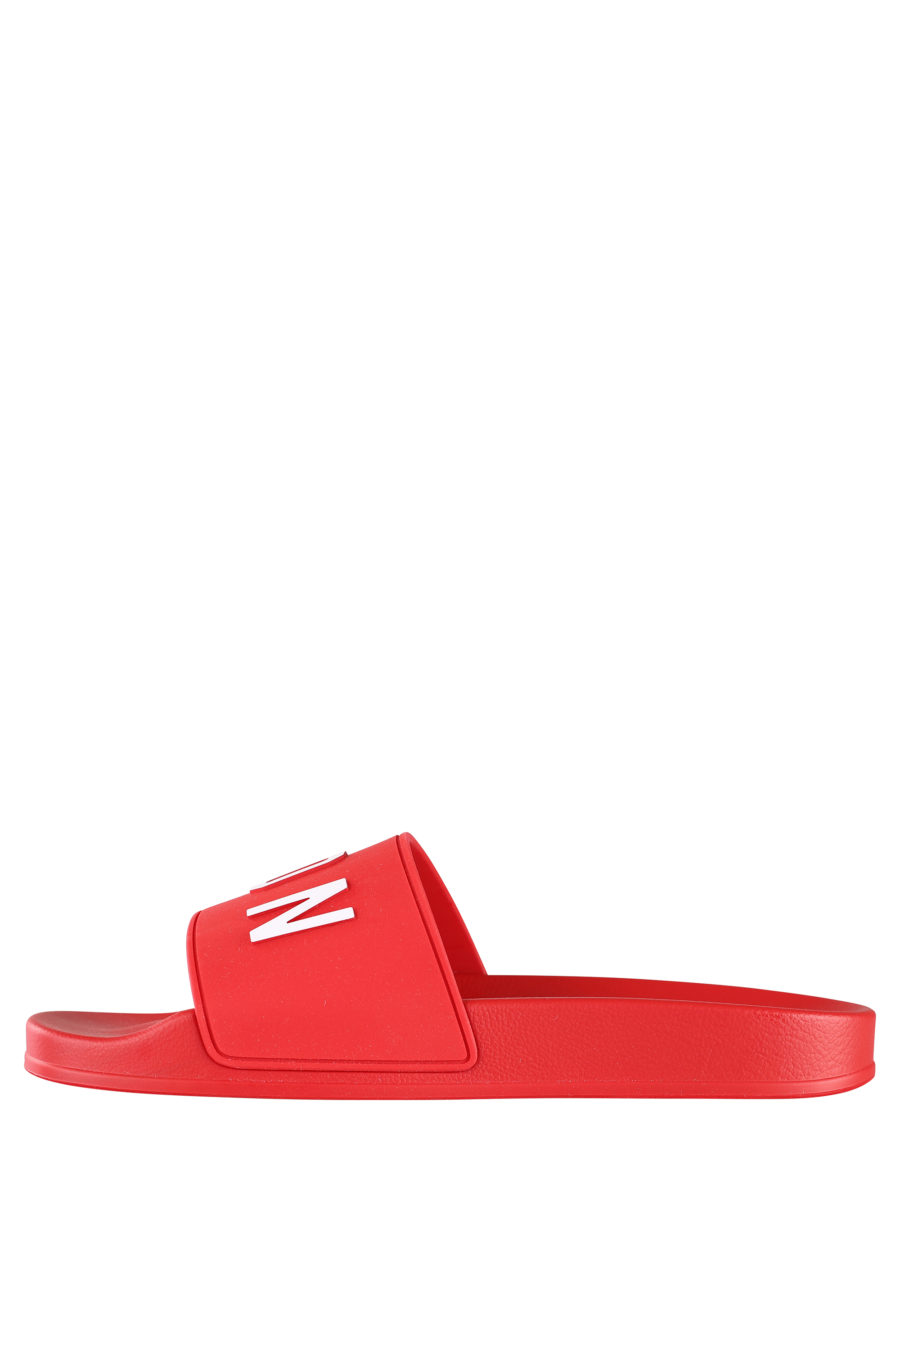 Rote Flip Flops mit weißem "Icon"-Logo - IMG 9944